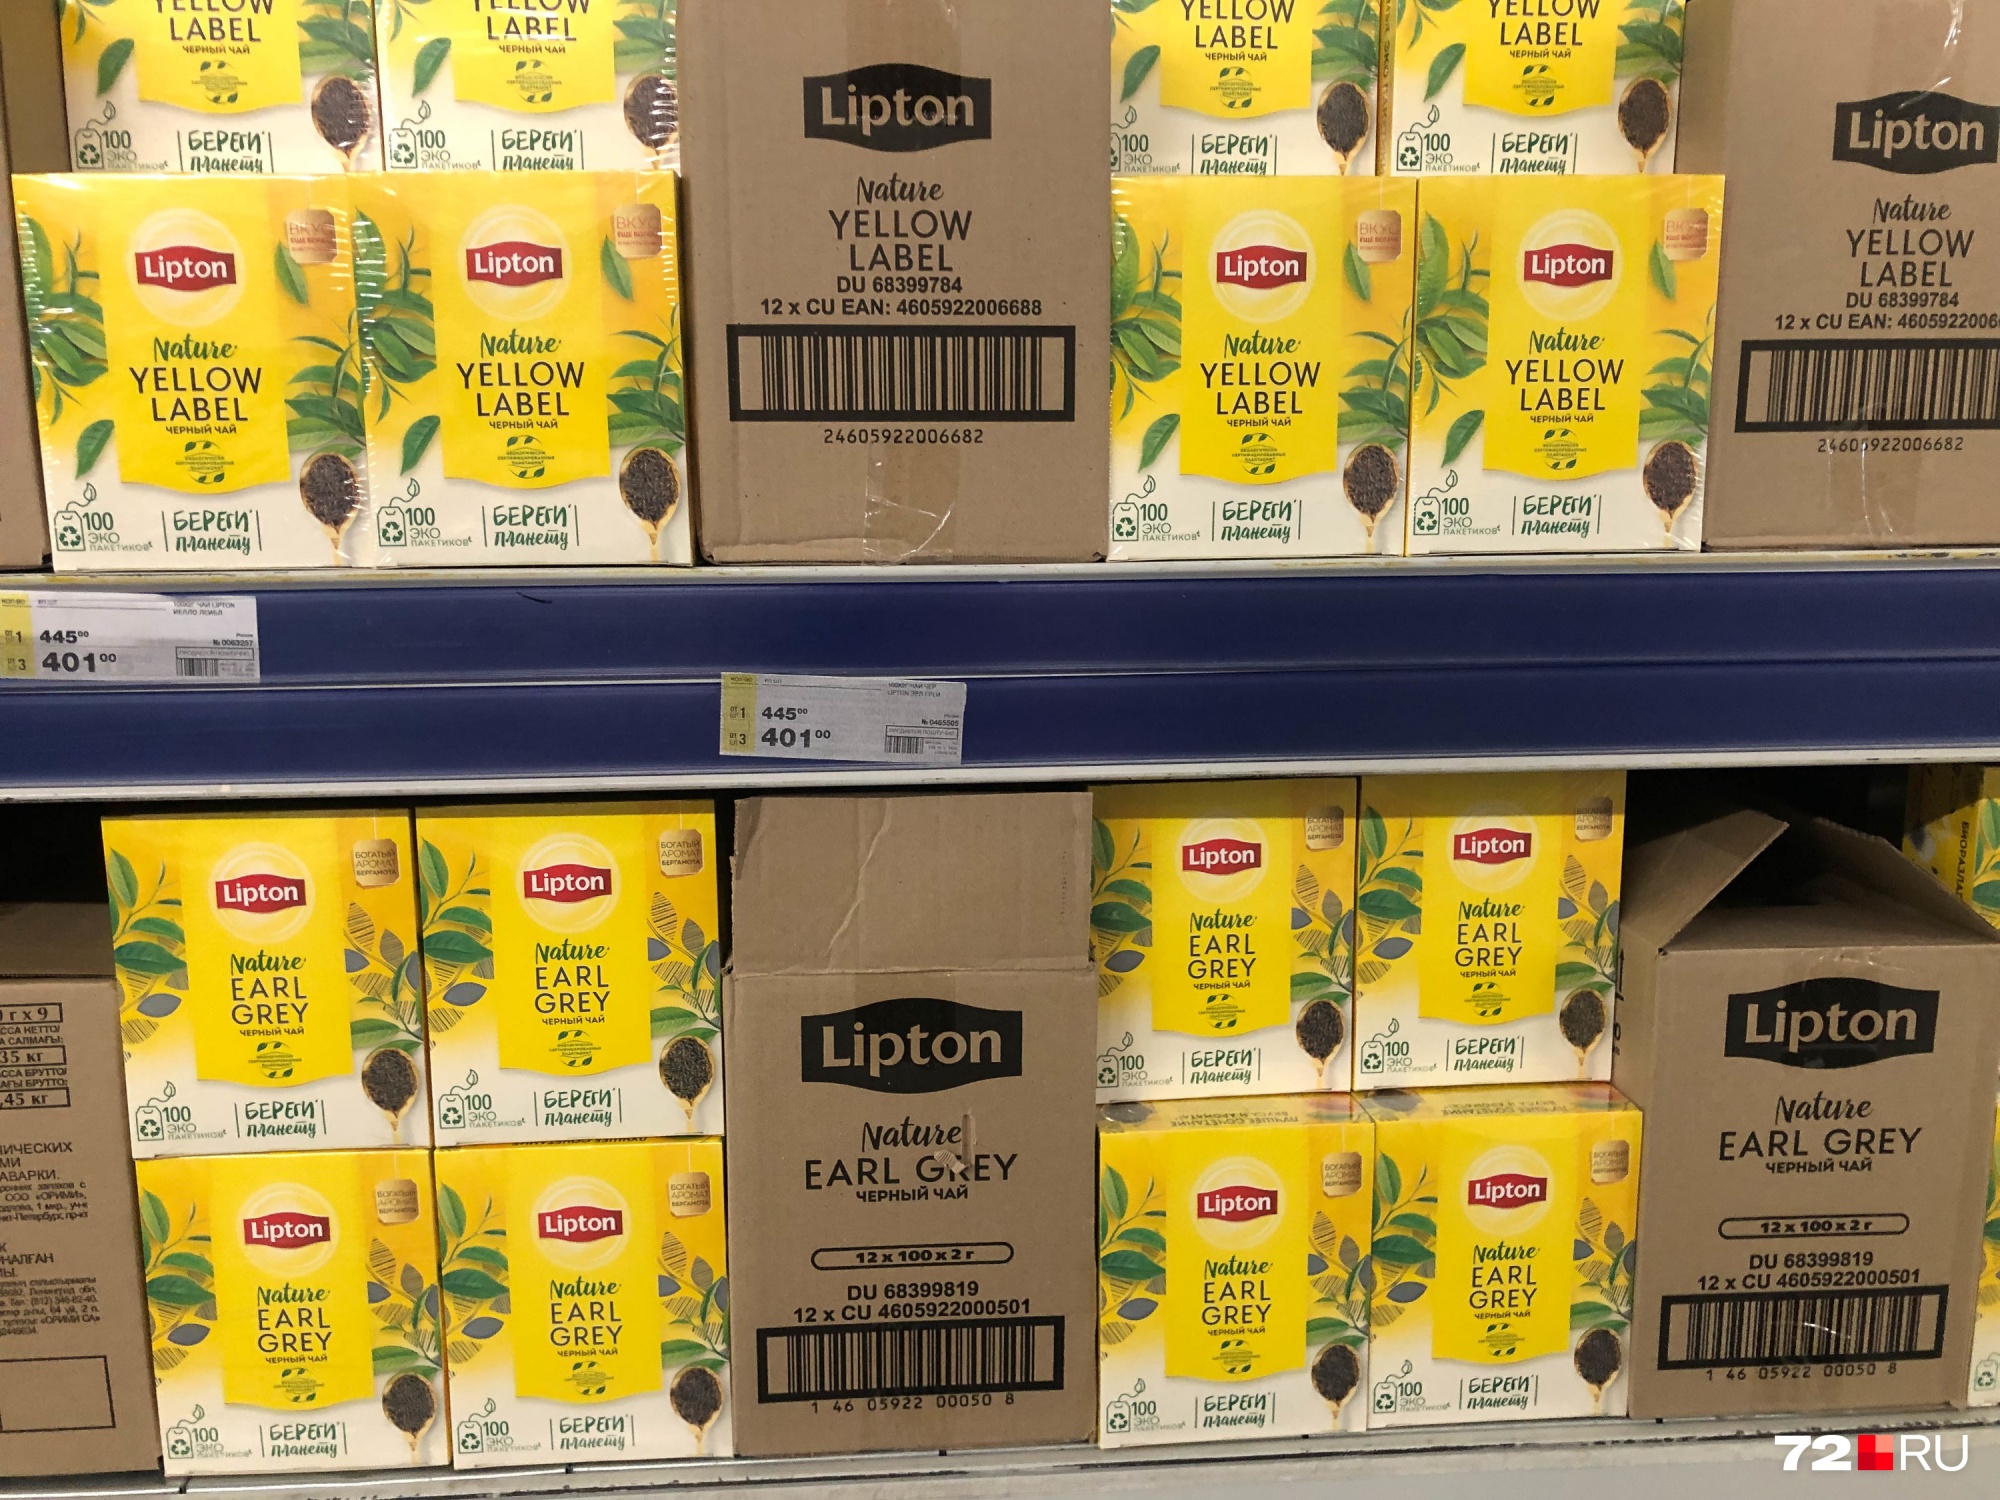 100 пакетиков черного чая Lipton стоят 445 рублей за упаковку, но если берете три и больше сразу — по 401 рублю каждая